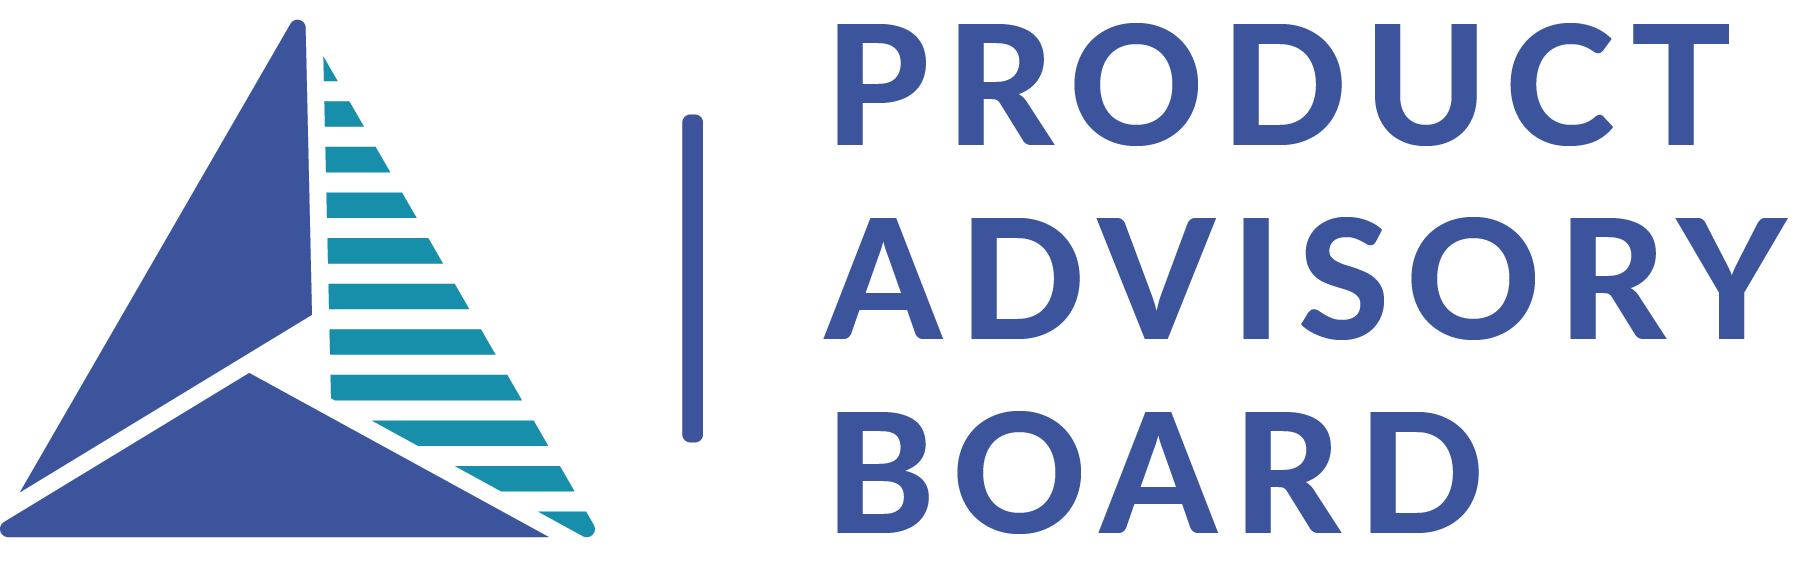 Product Advisory Board logo